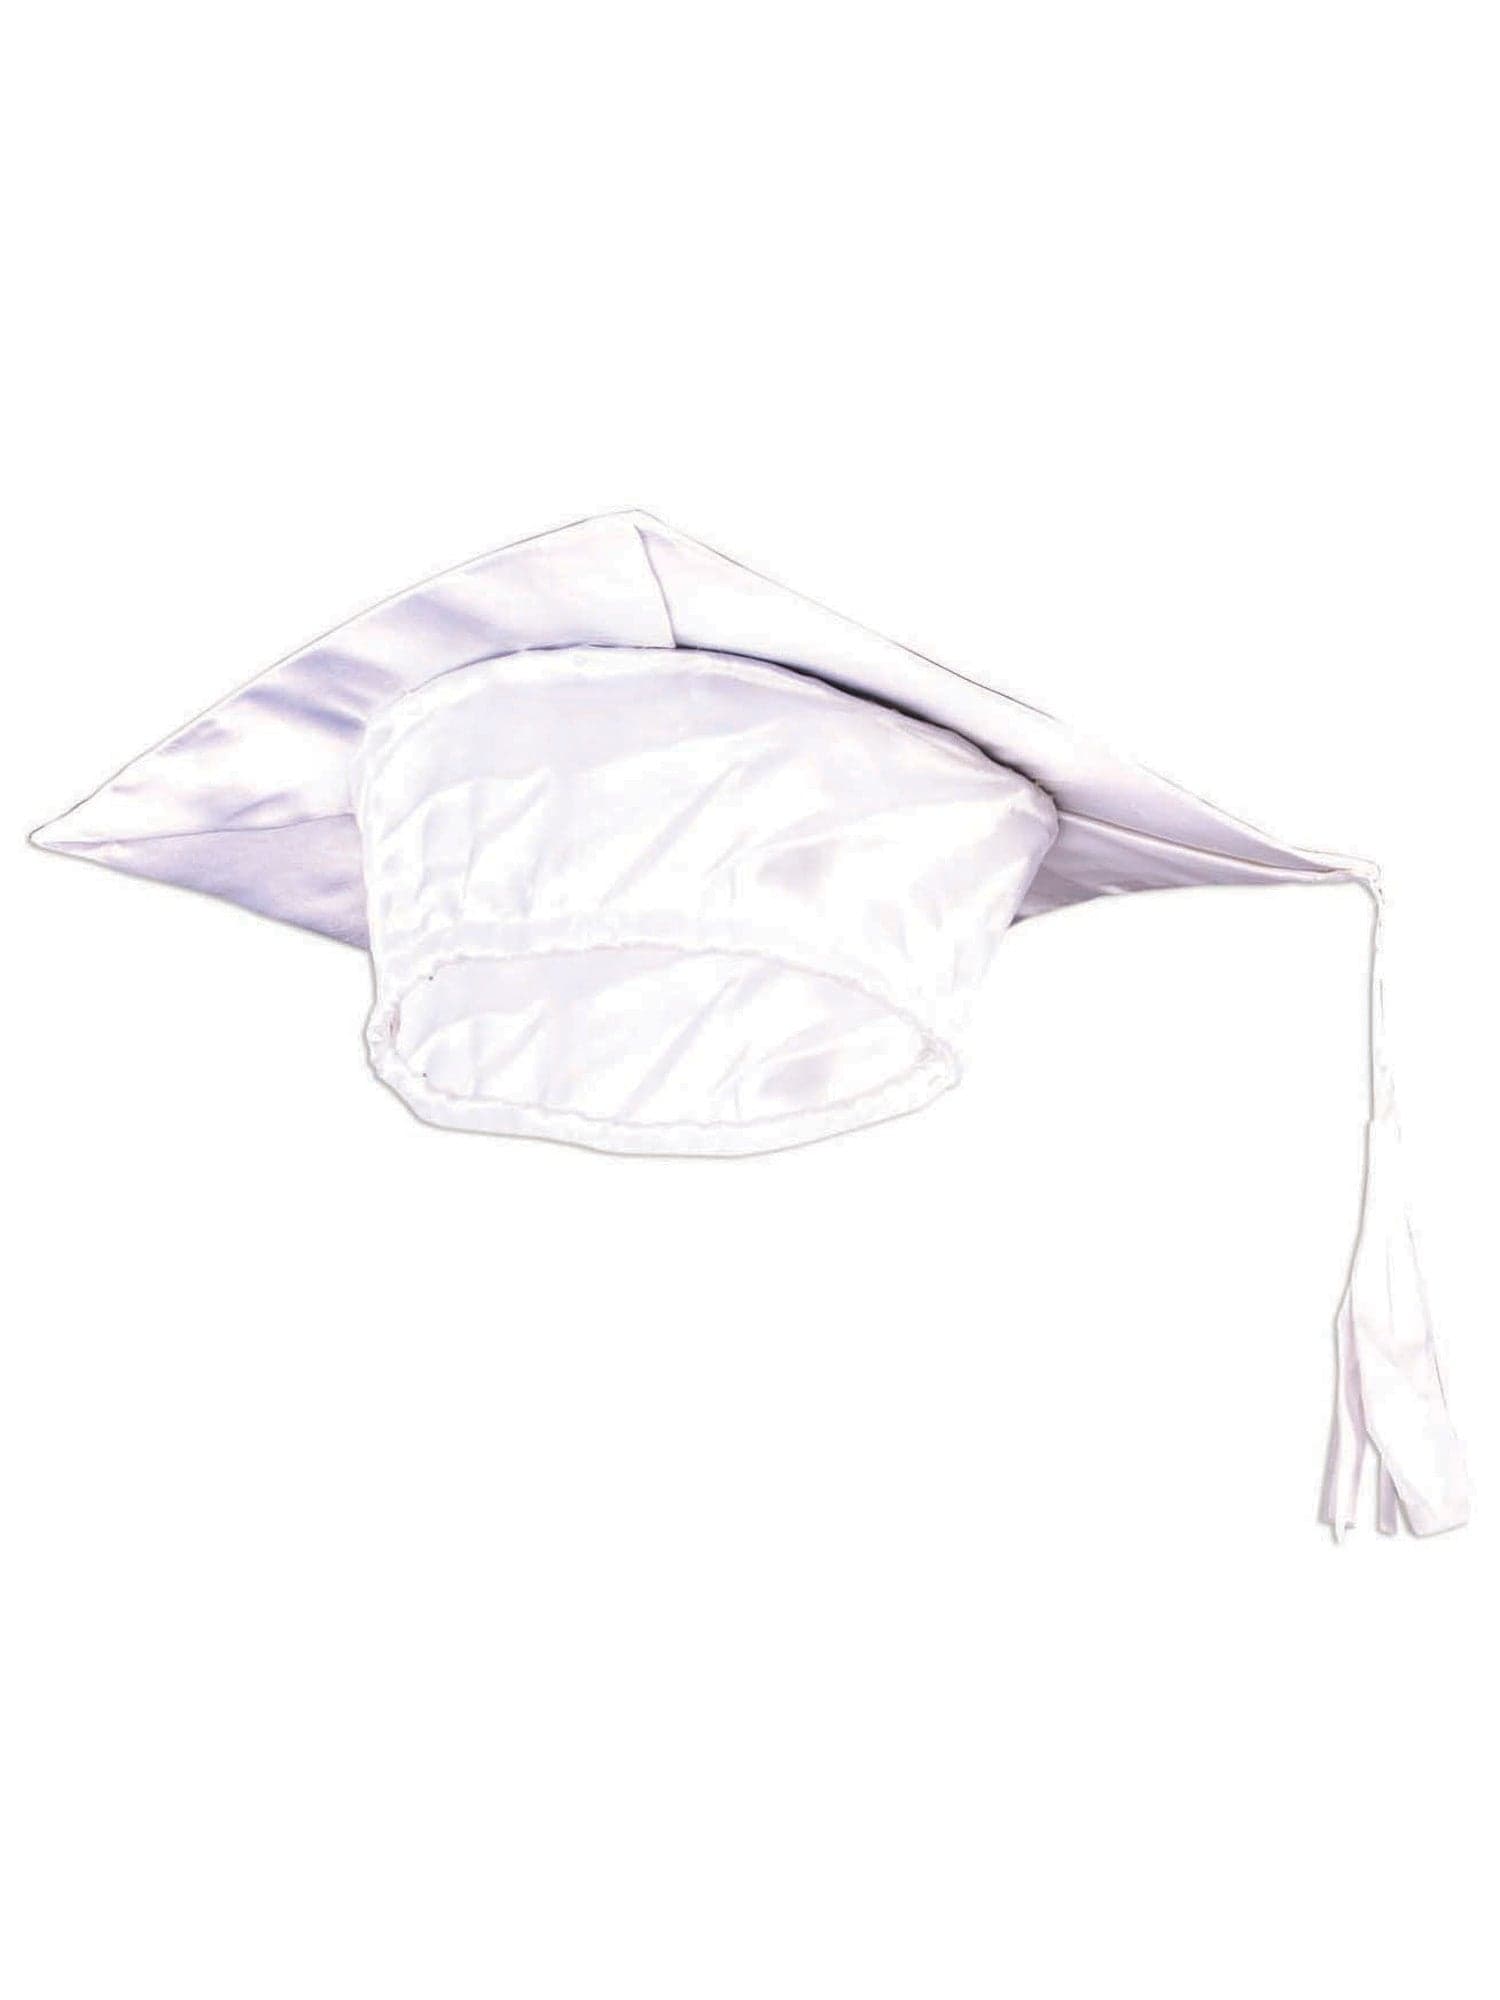 White Graduation Adult Cap - costumes.com